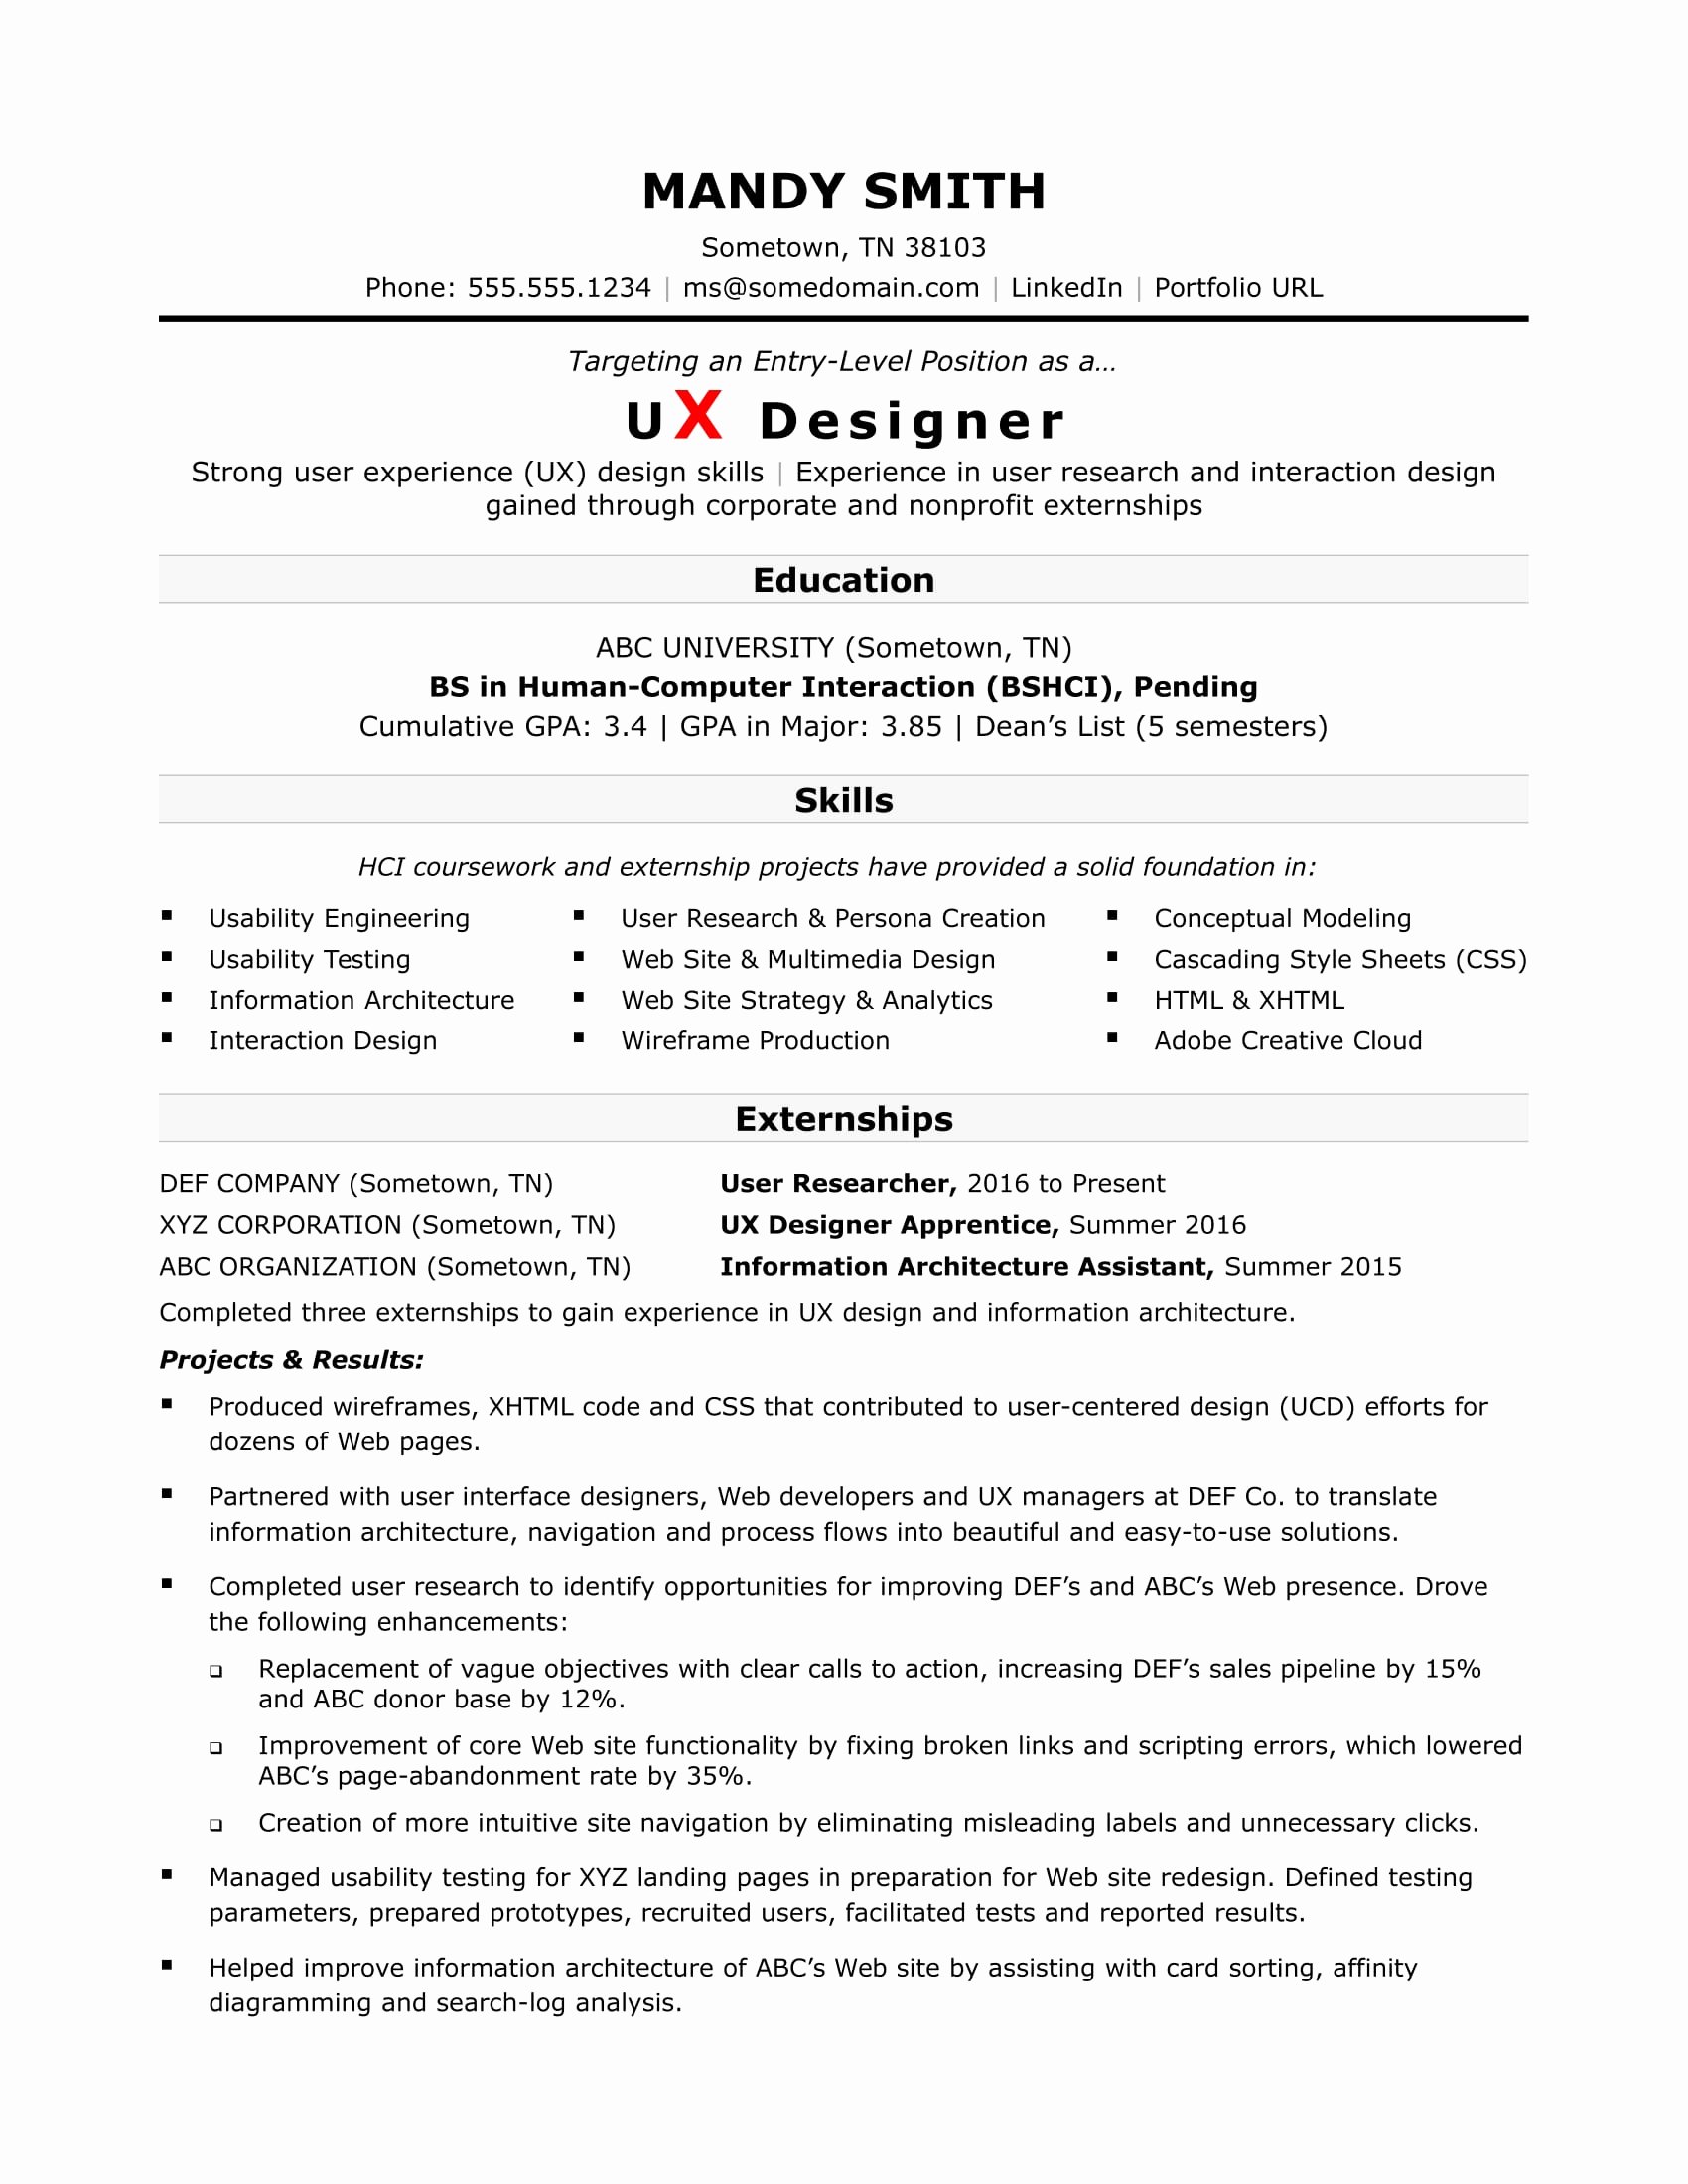 Sample Resume for An Entry Level Ux Designer